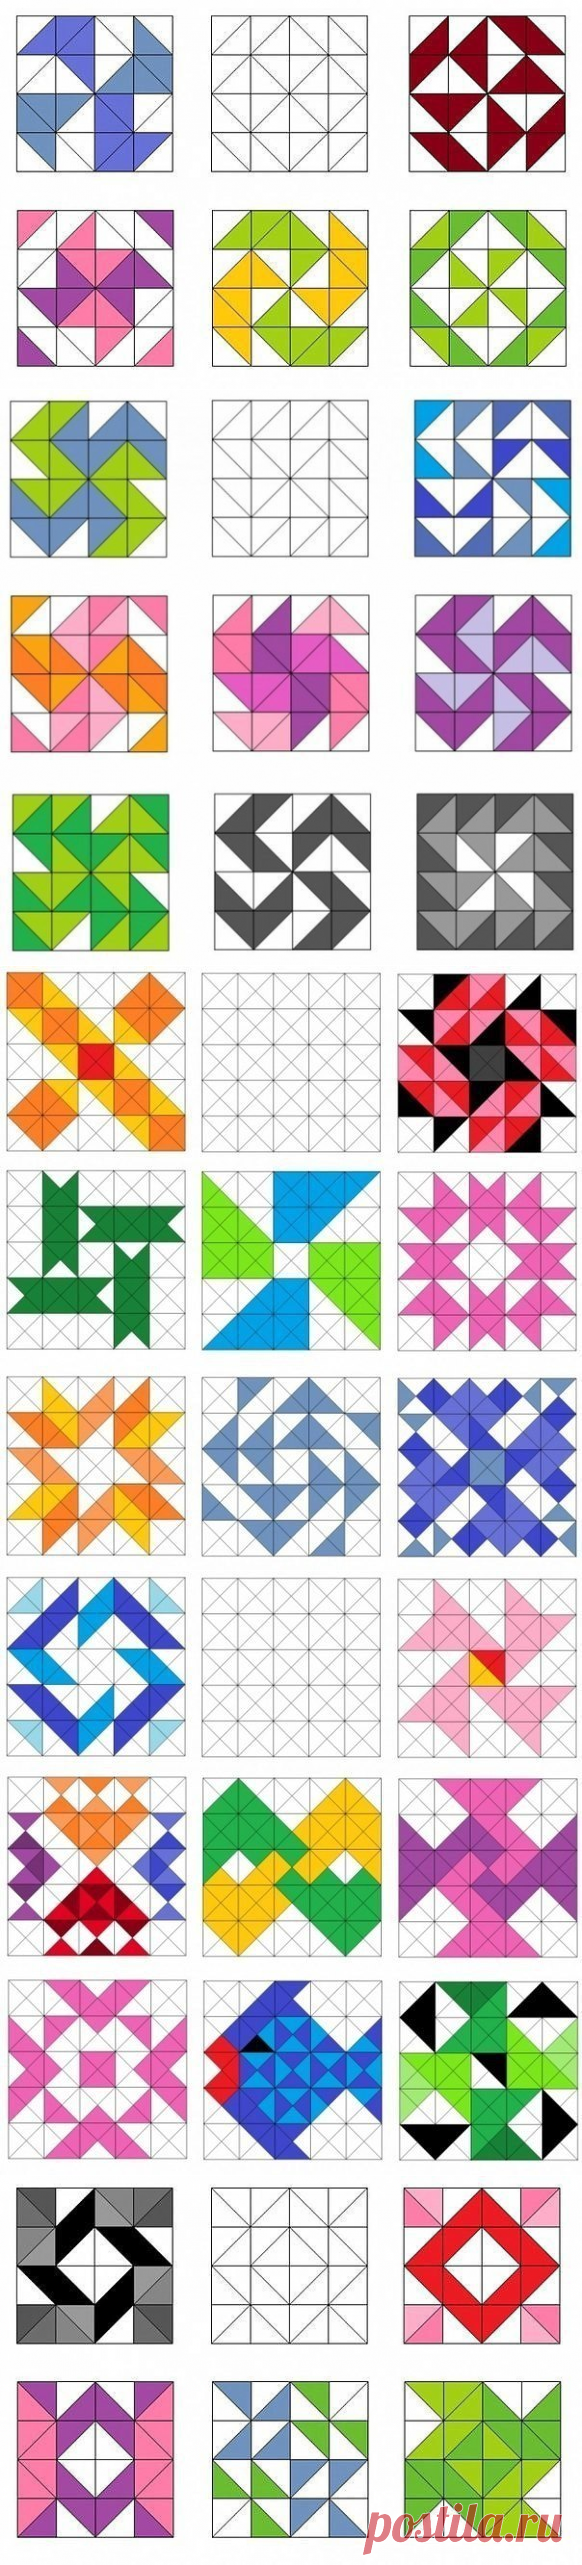 Образцы лоскутных блоков с использованием квадратов и треугольников — Сделай сам, идеи для творчества - DIY Ideas